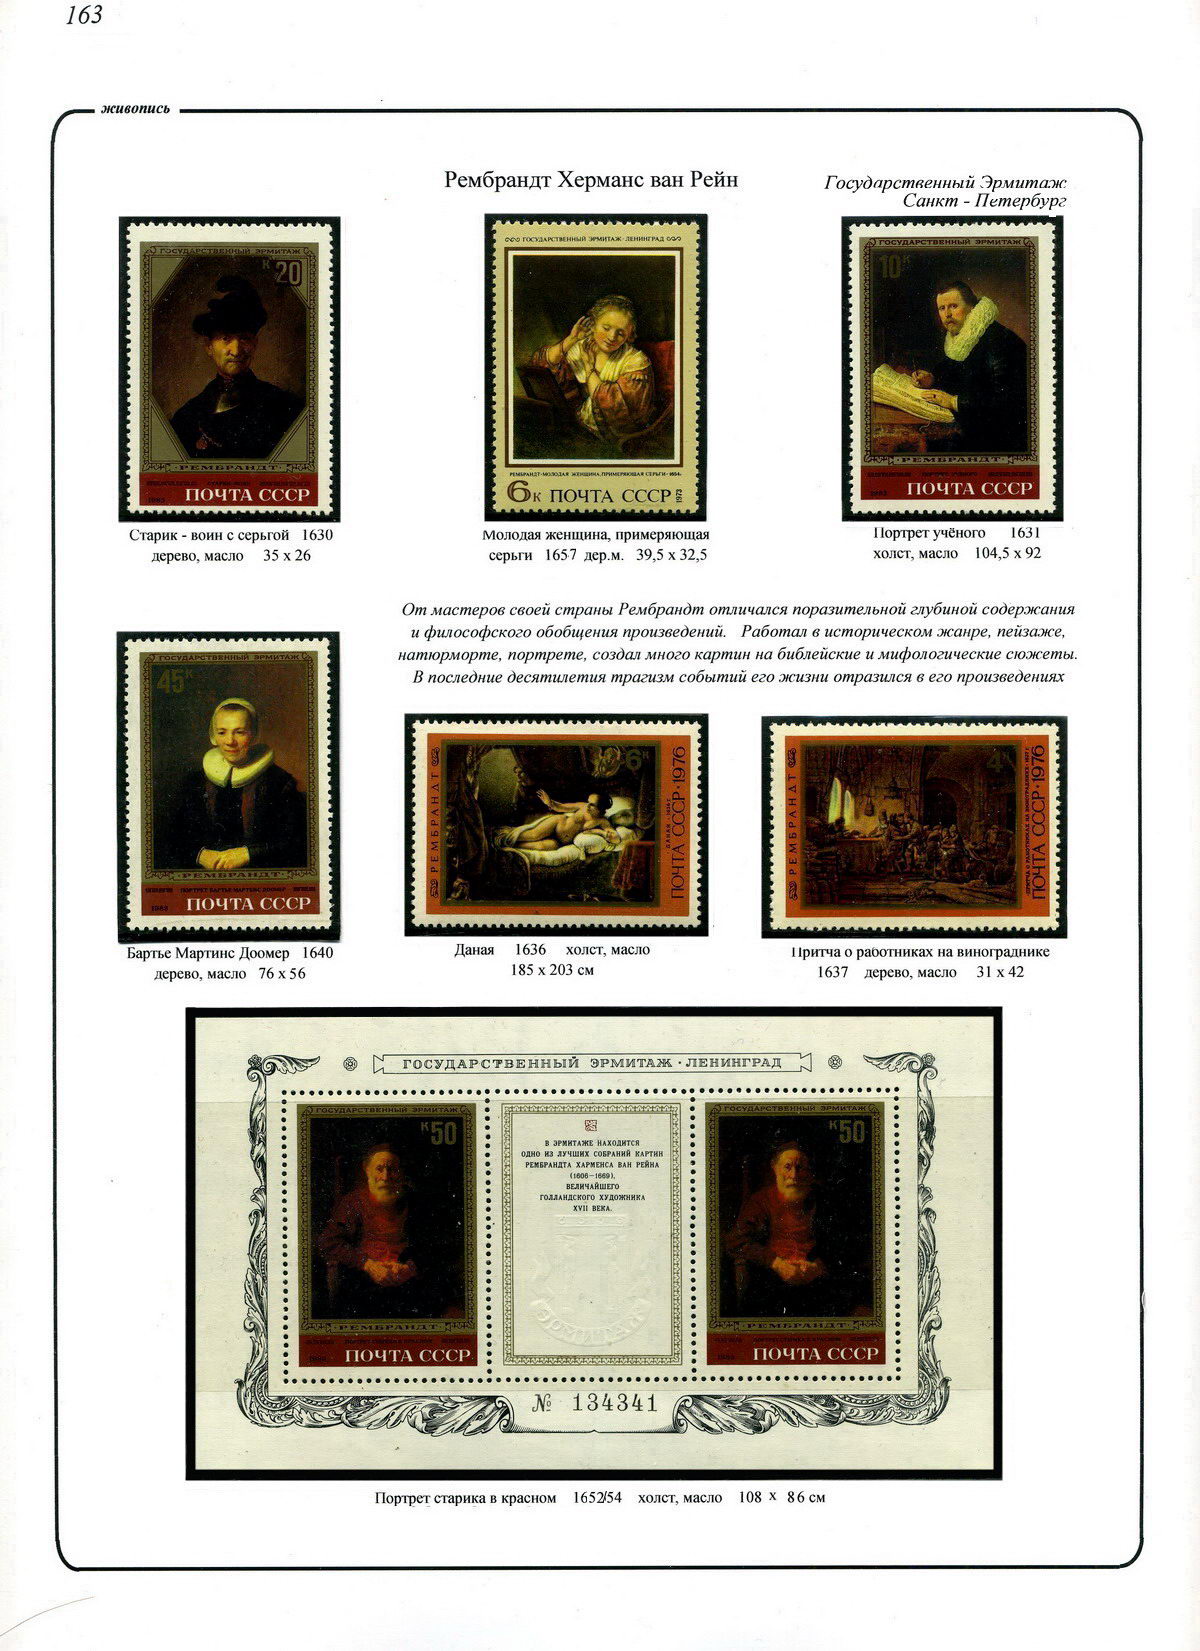 Рембрандт Х.в.Р., Государственный Эрмитаж, лист стенда